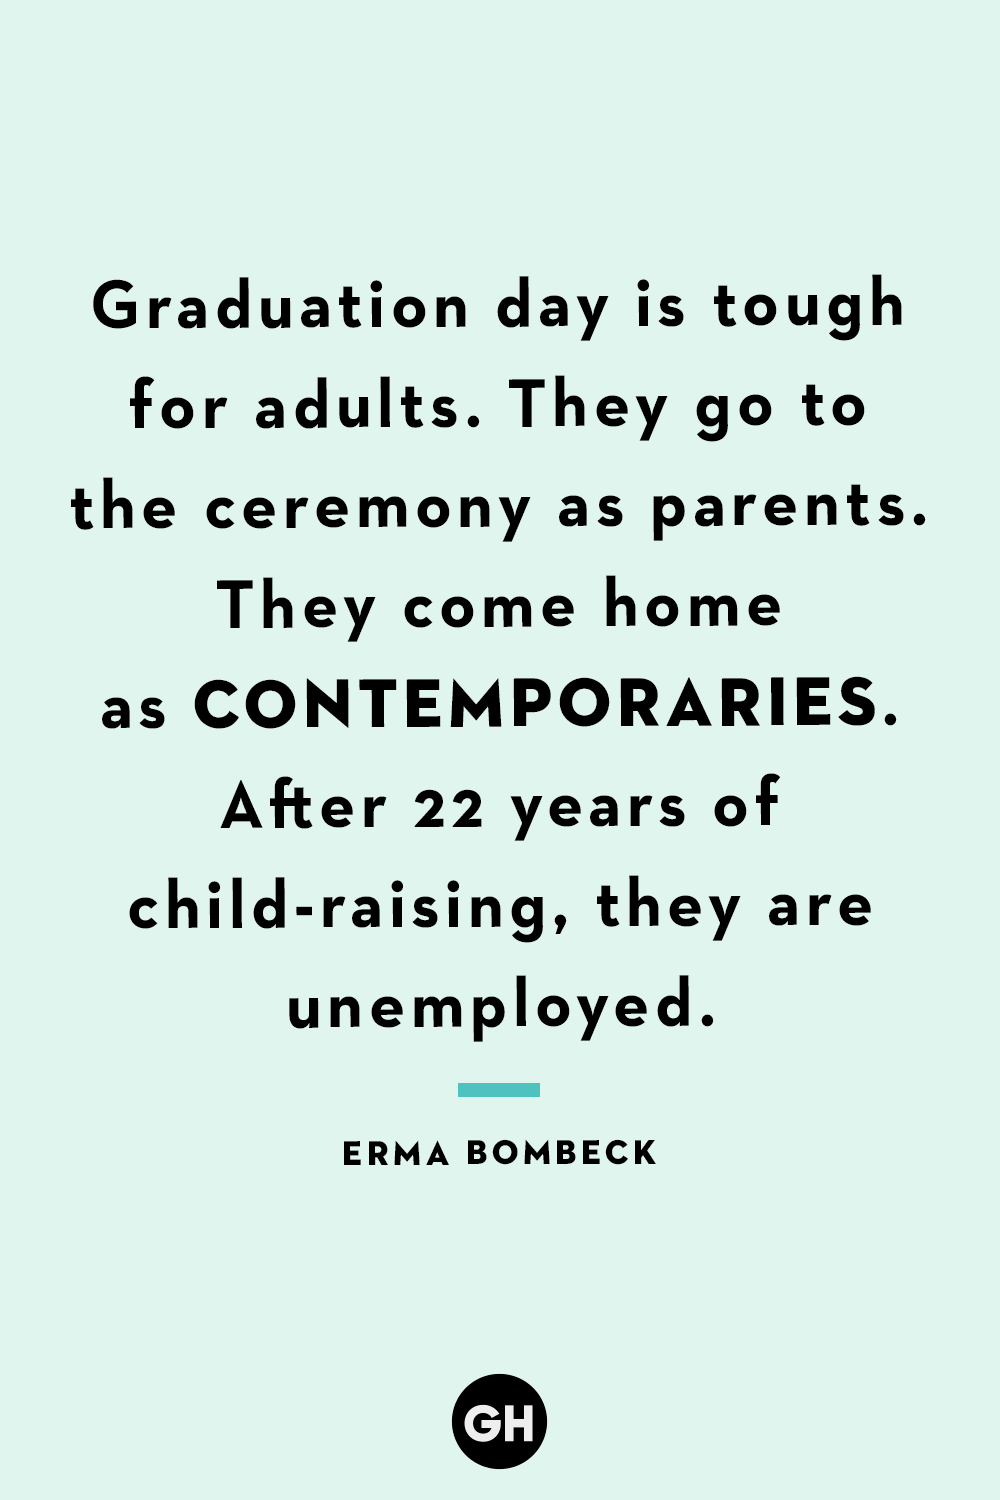 Funny Graduation Quotes Erma Bombeck 64149ec7311a9 